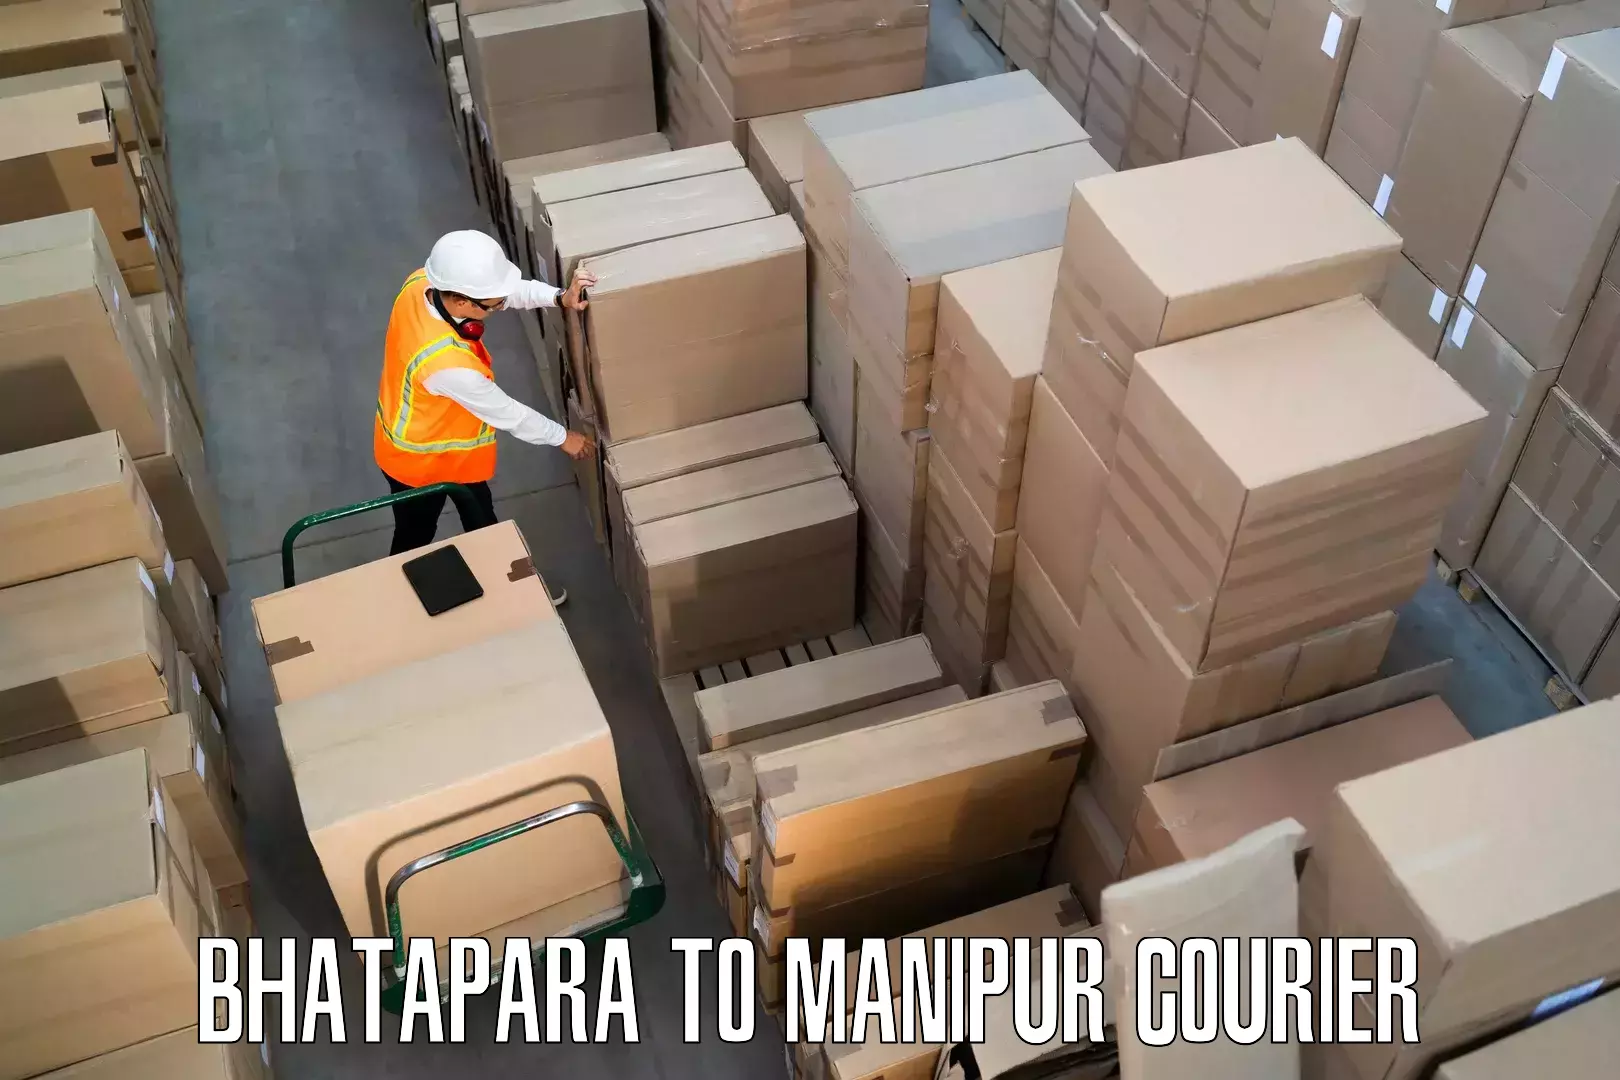 Furniture transport and logistics Bhatapara to Ukhrul